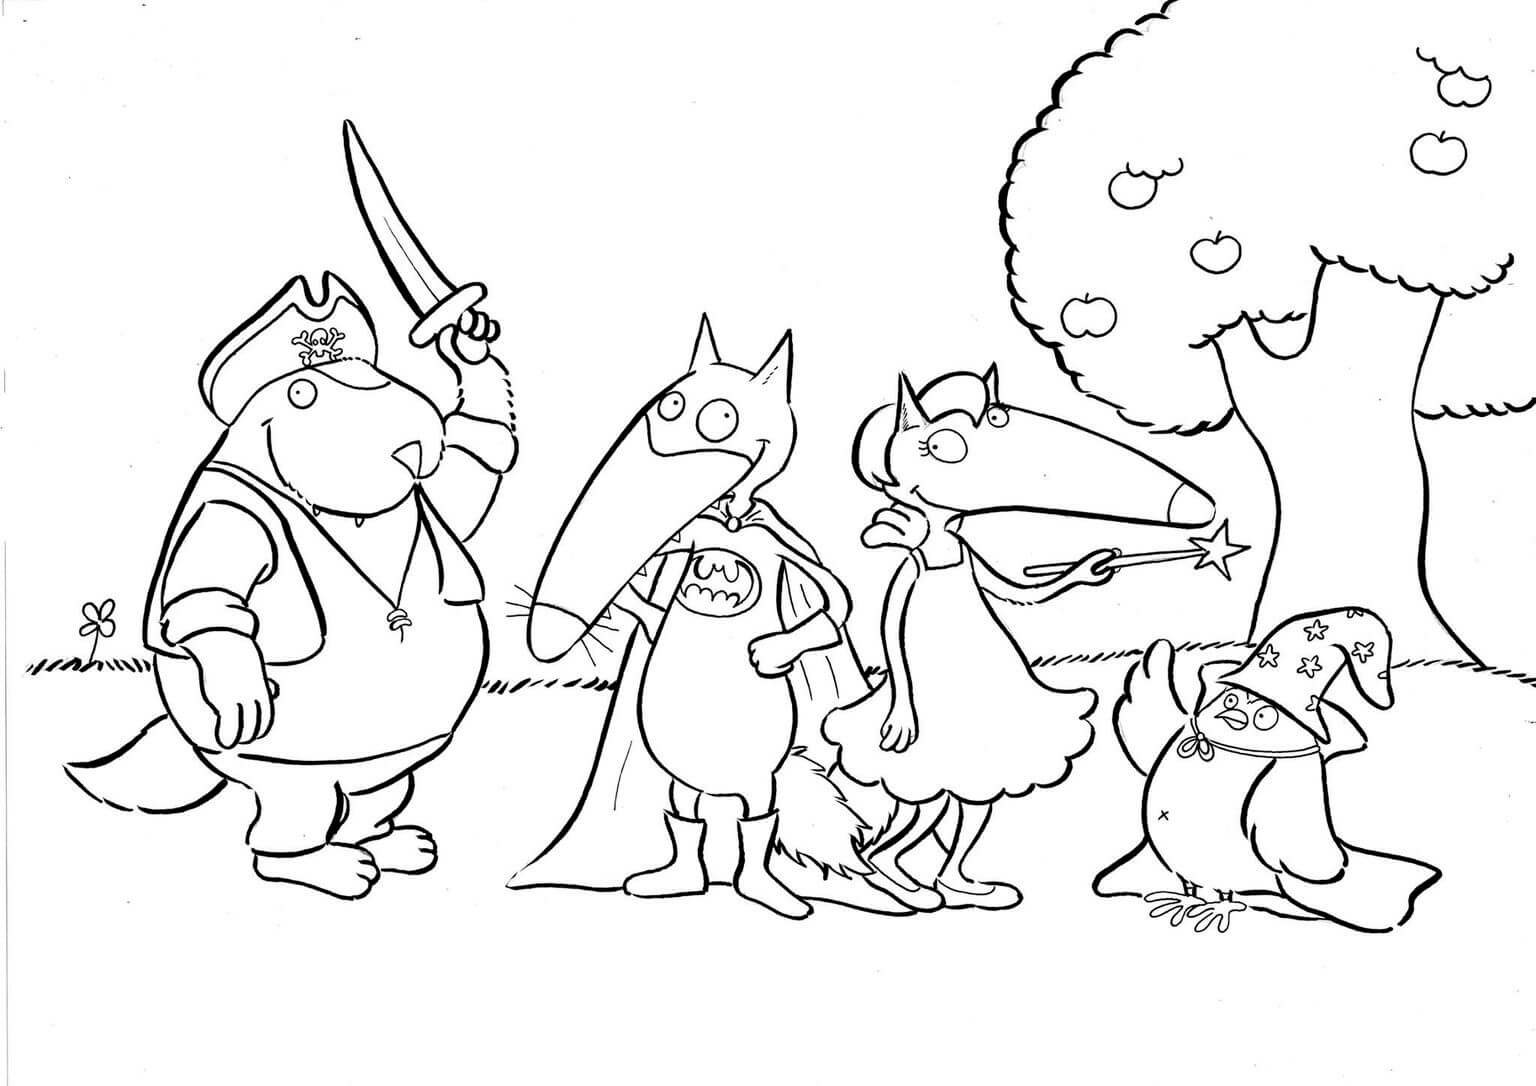   Groupe de personnages de dessin animé côte à côte 